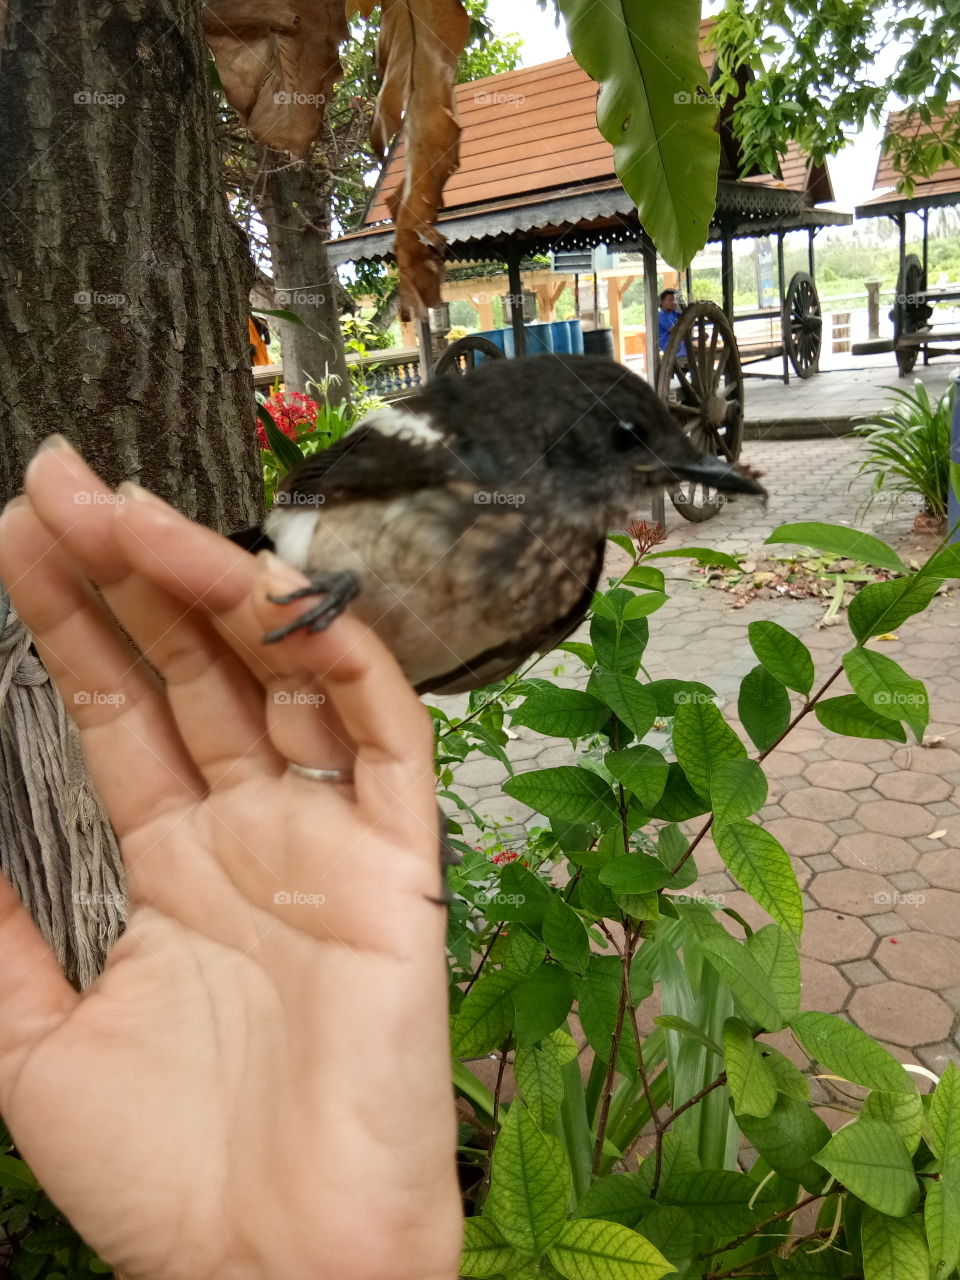 hand
bird
thailand